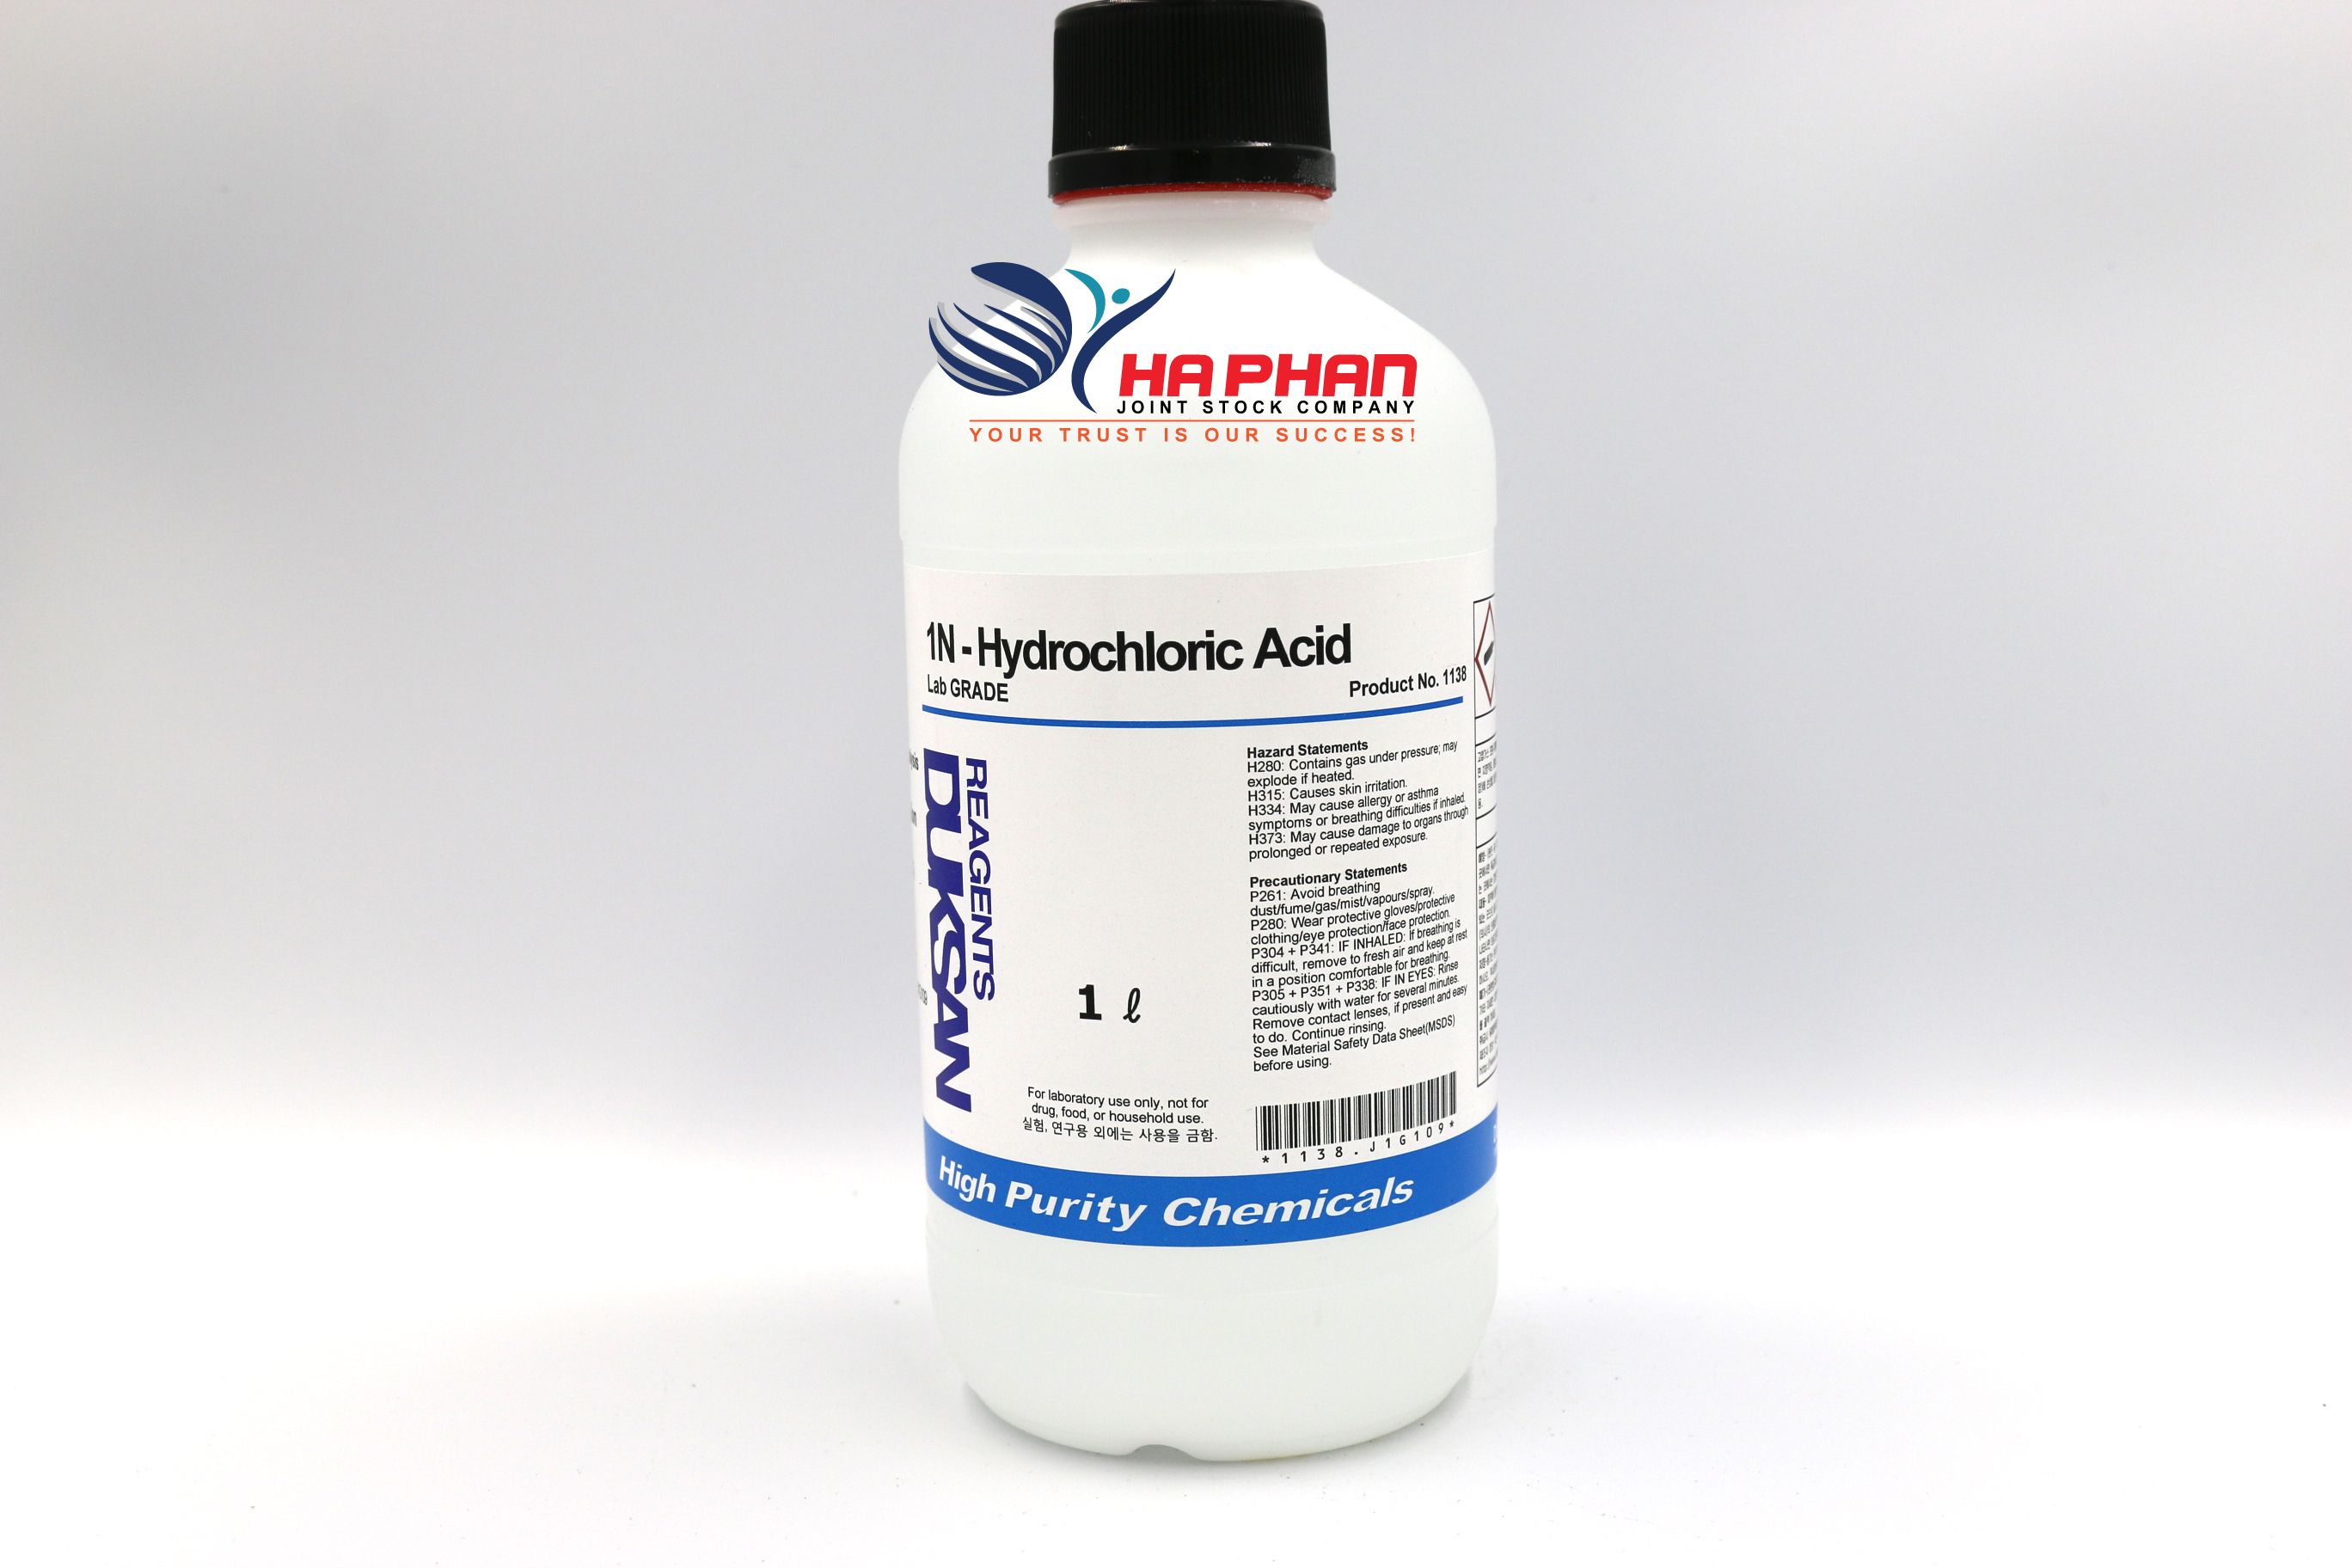 1N-Hydrochloric Acid